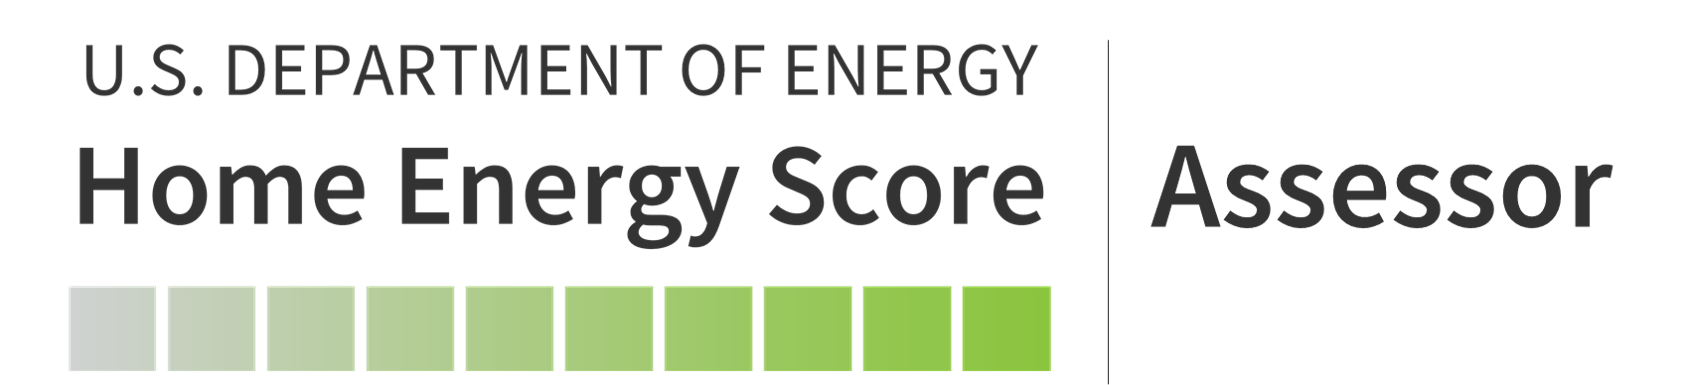 Home energy score assessor